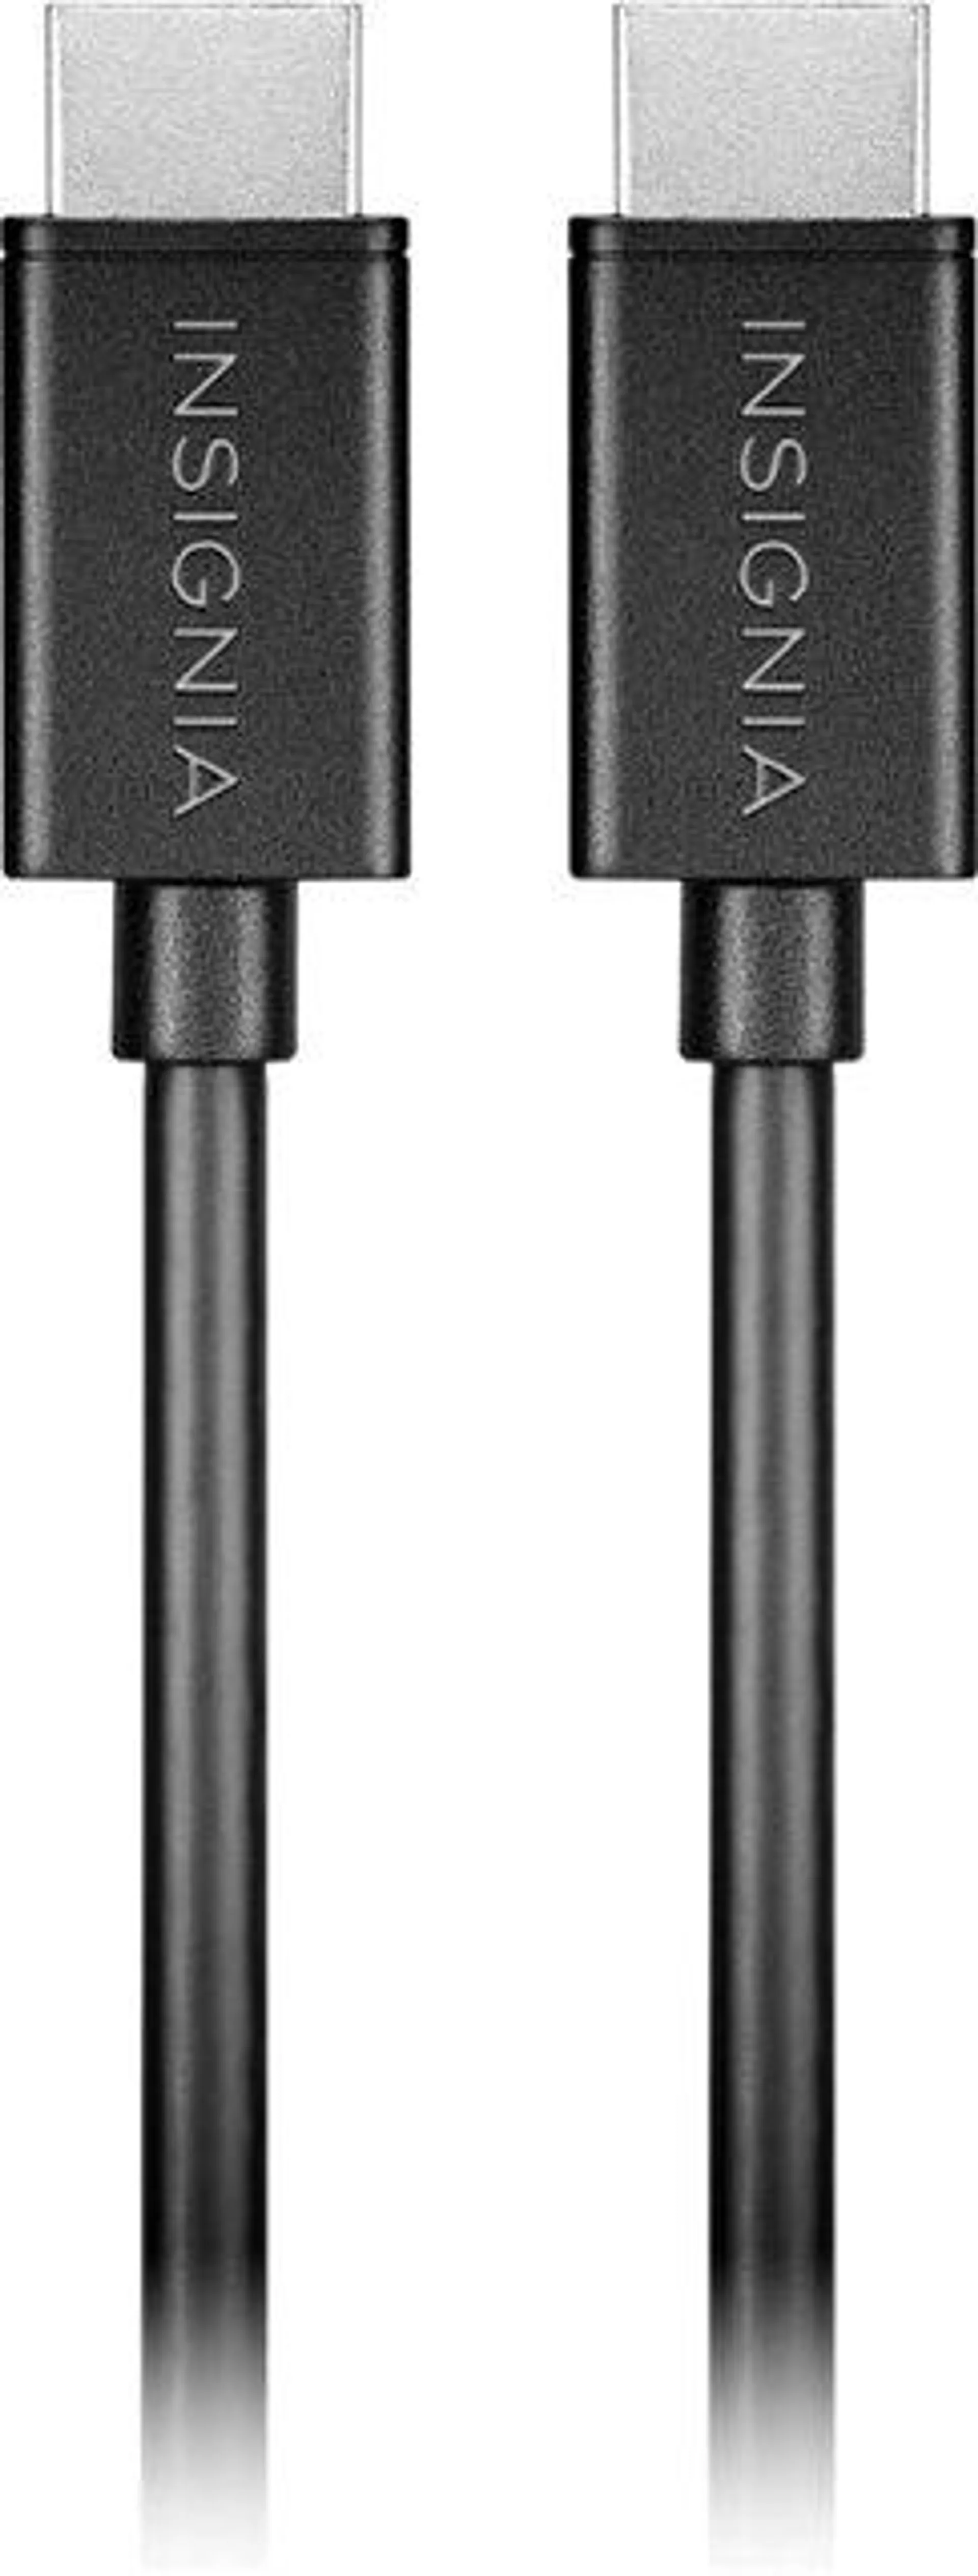 Insignia™ - 4' 4K Ultra HD HDMI Cable - Black